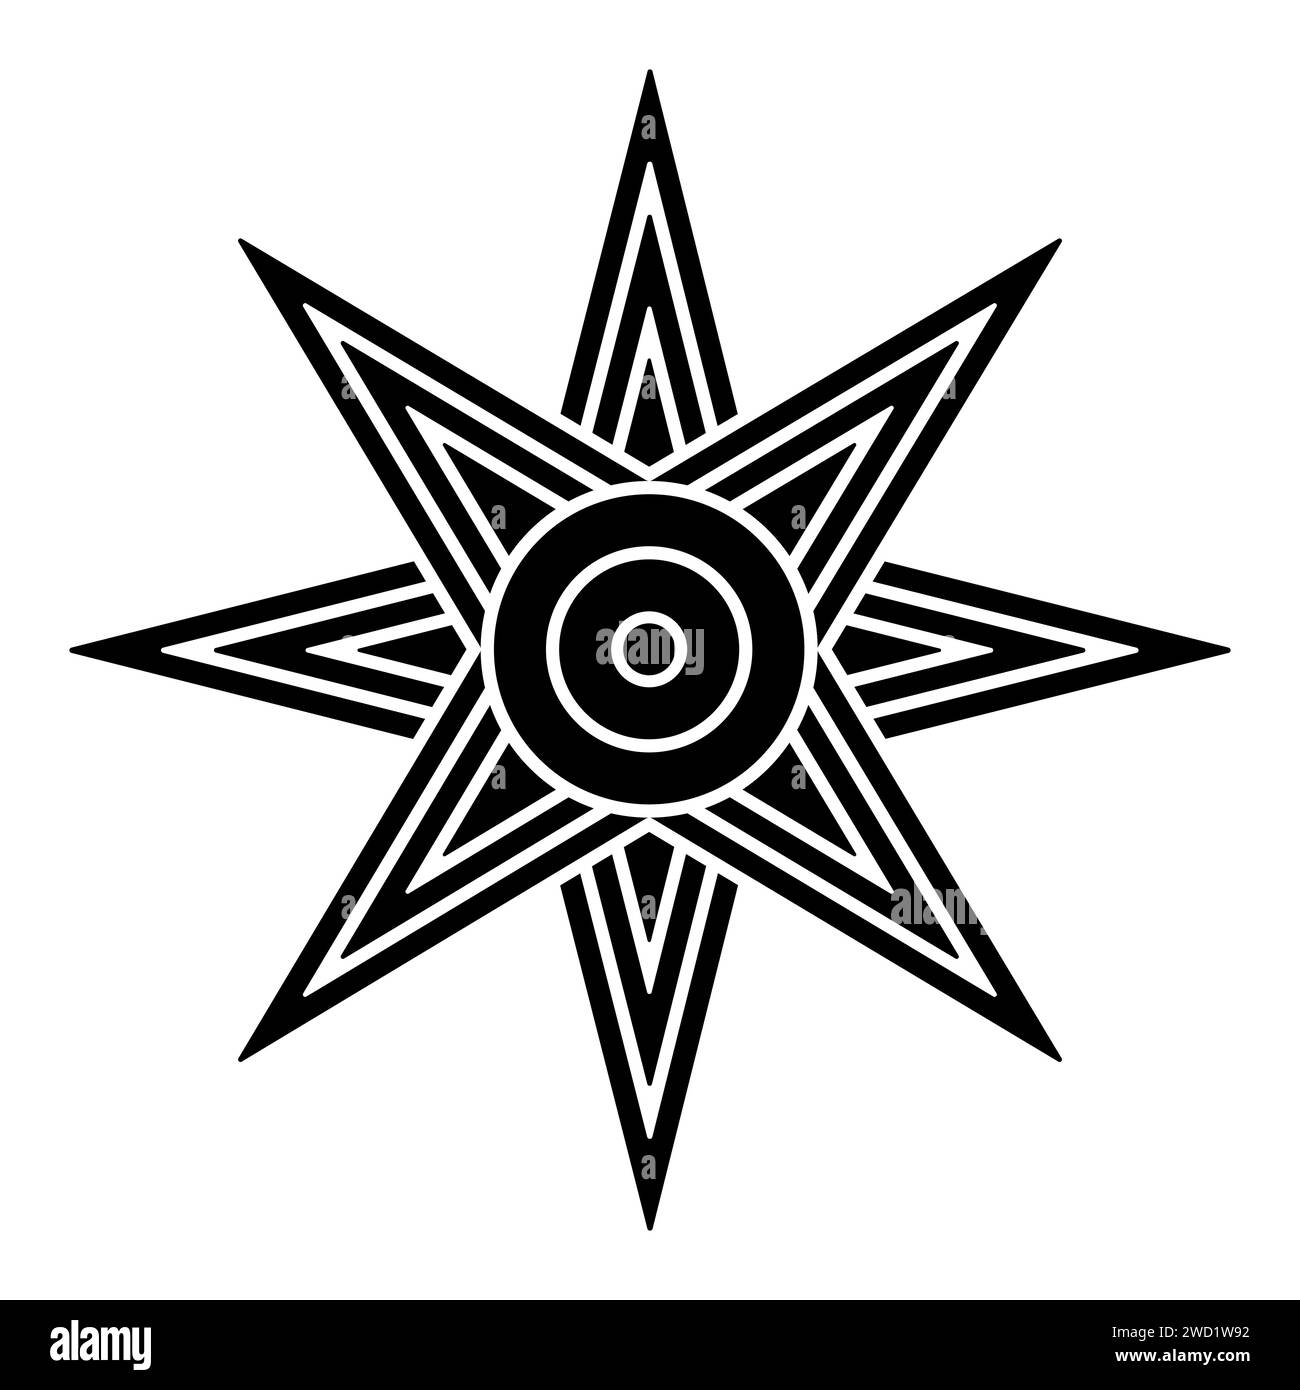 Stern von Ishtar oder Inanna, oder auch Stern von Venus wird gewöhnlich mit acht Punkten dargestellt. Symbol der antiken sumerischen Göttin Inanna und Ishtar. Stockfoto